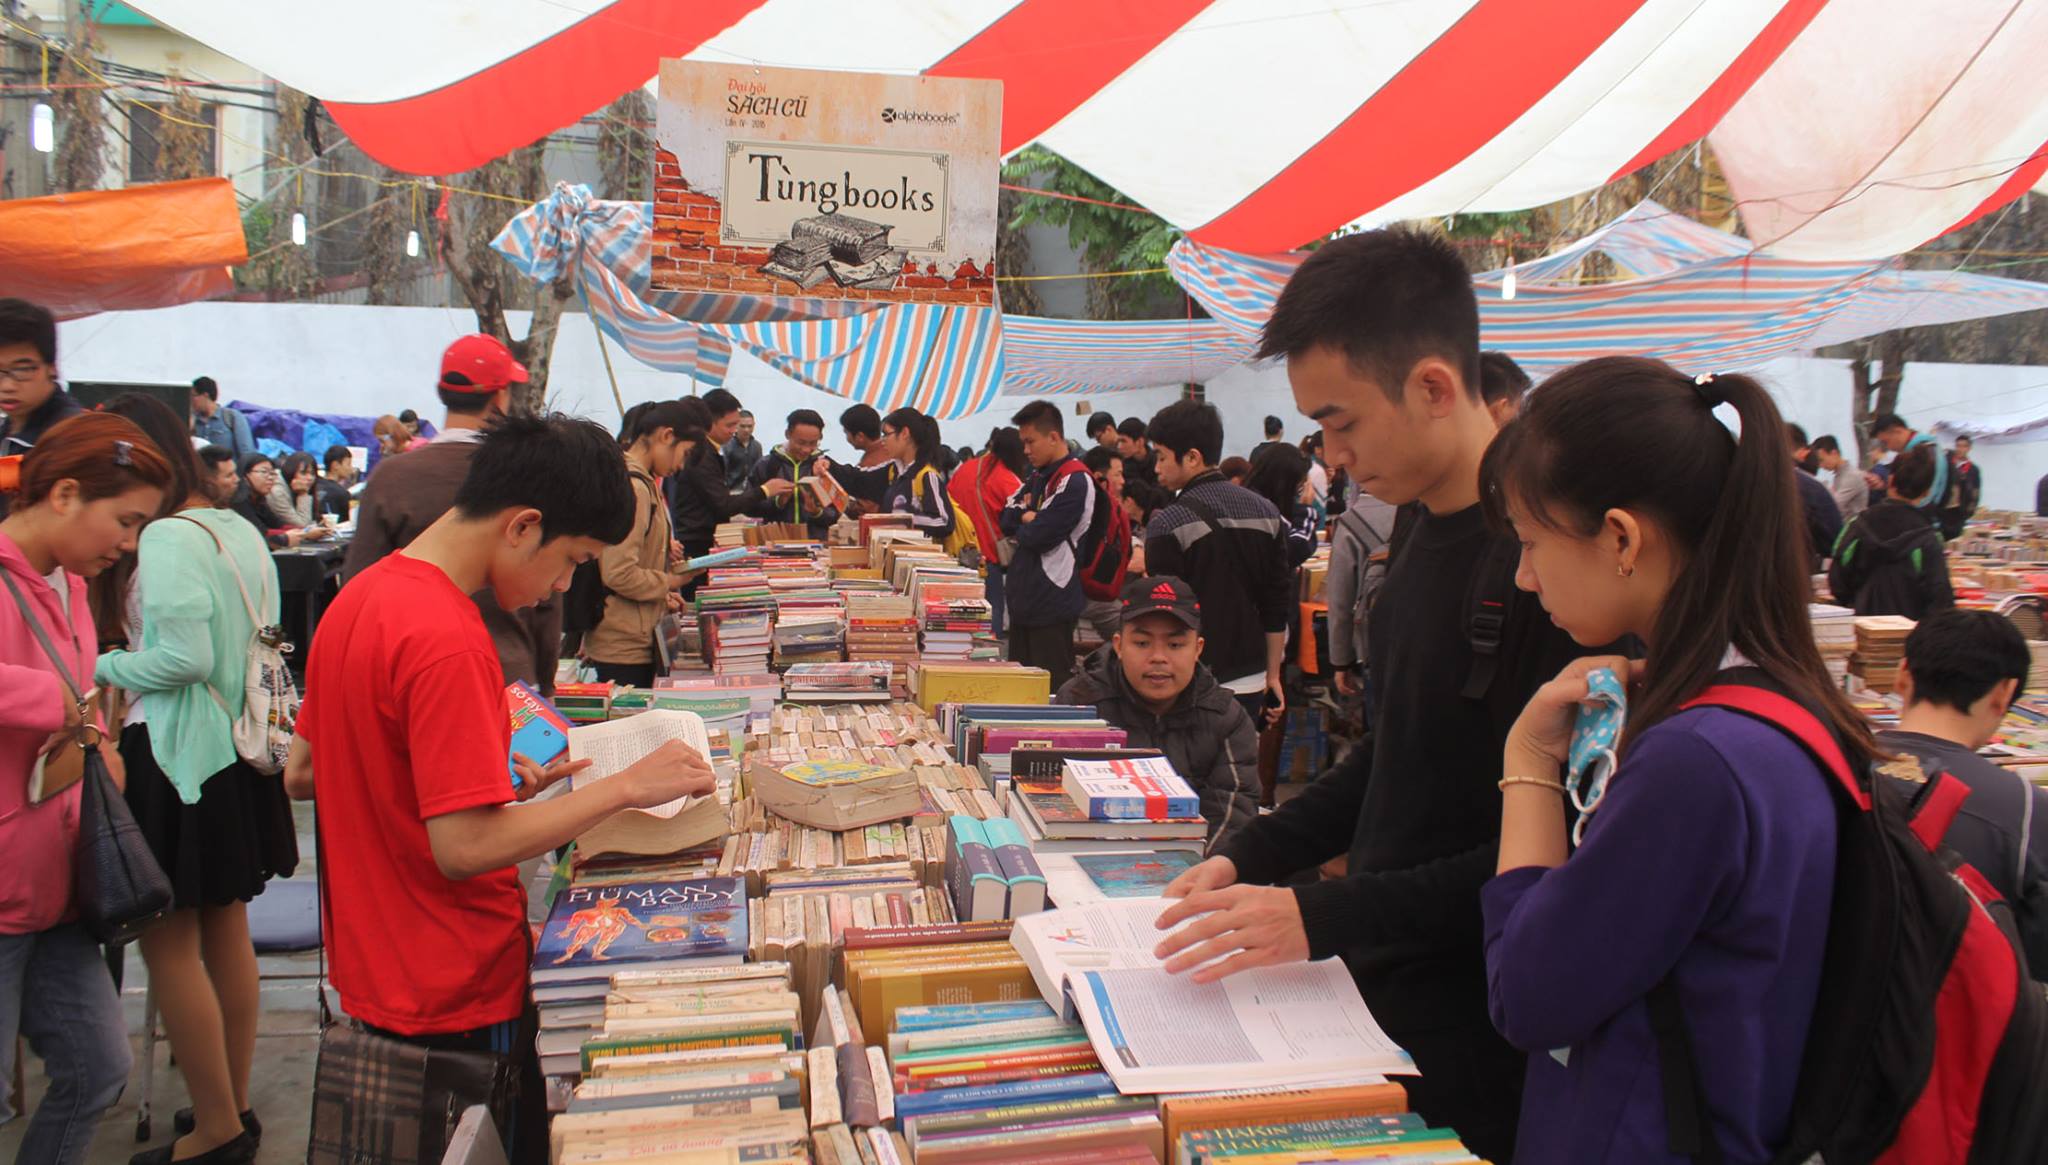 Hà Nội tổ chức Phiên chợ sách xưa lần 2